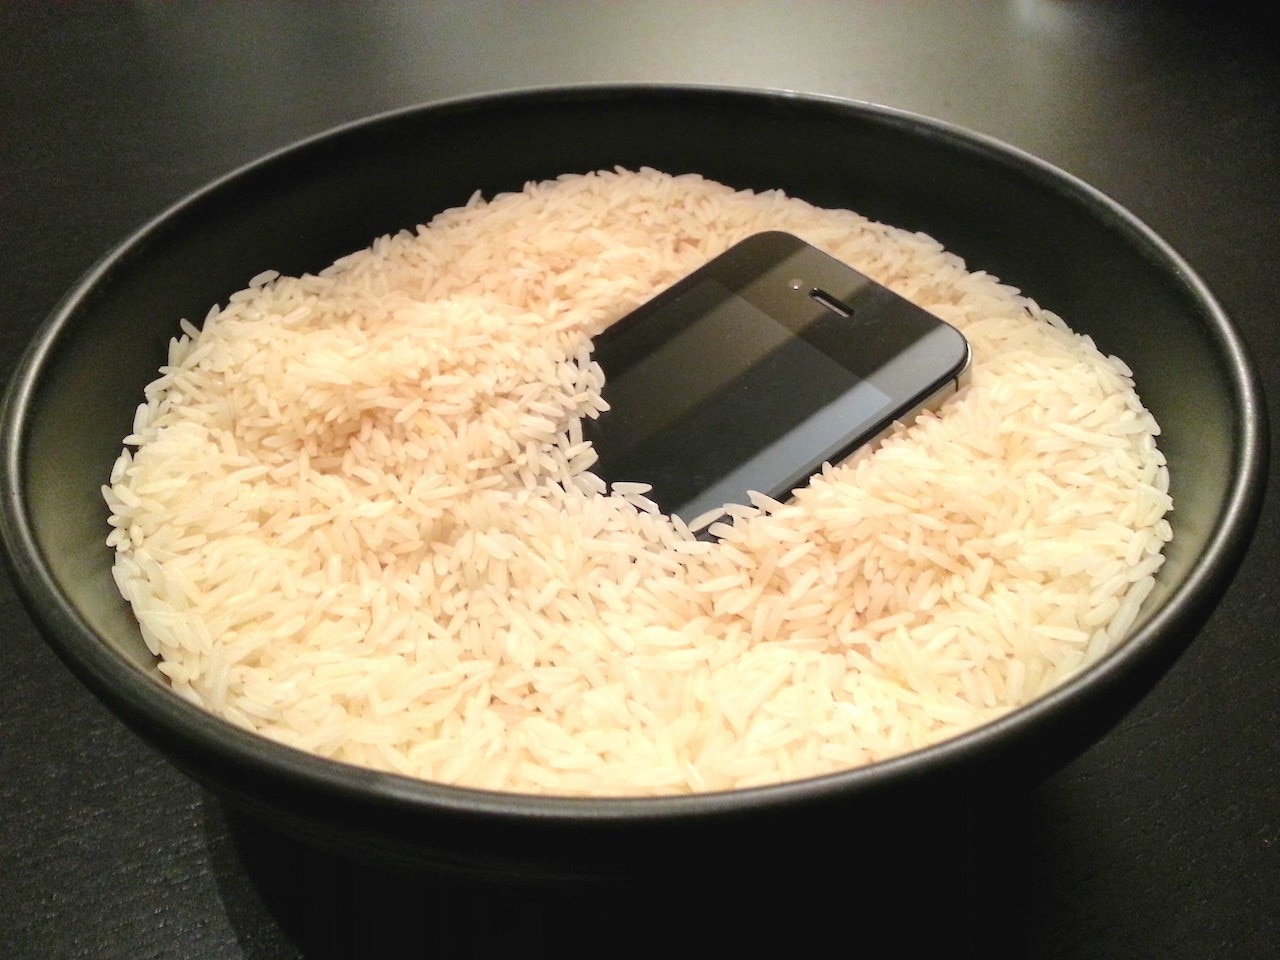 Il riso non salva lo smartphone bagnato, facciamocene una ragione!